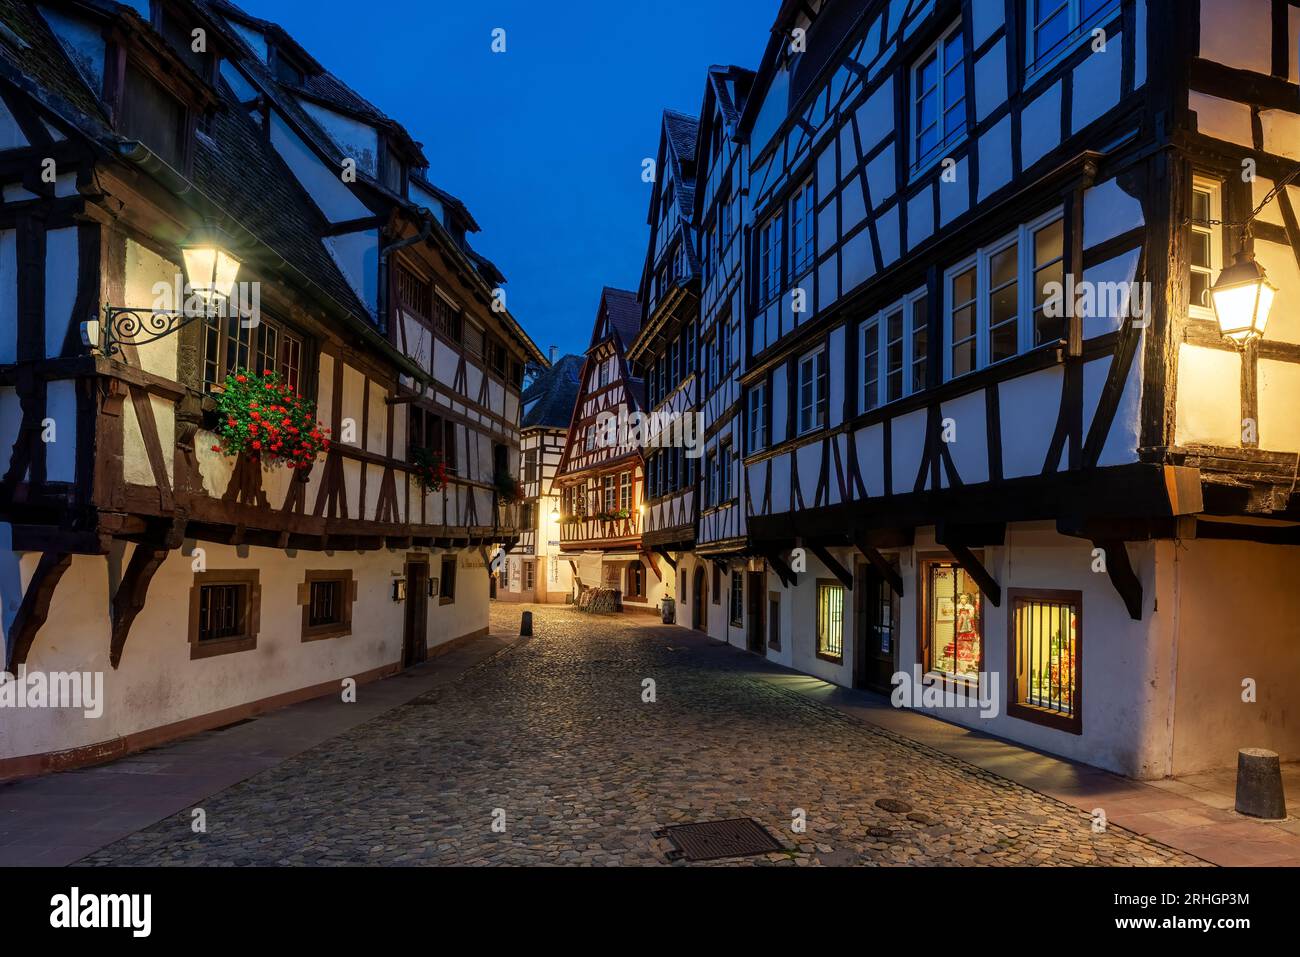 old street in Strasbourg, France Stock Photo